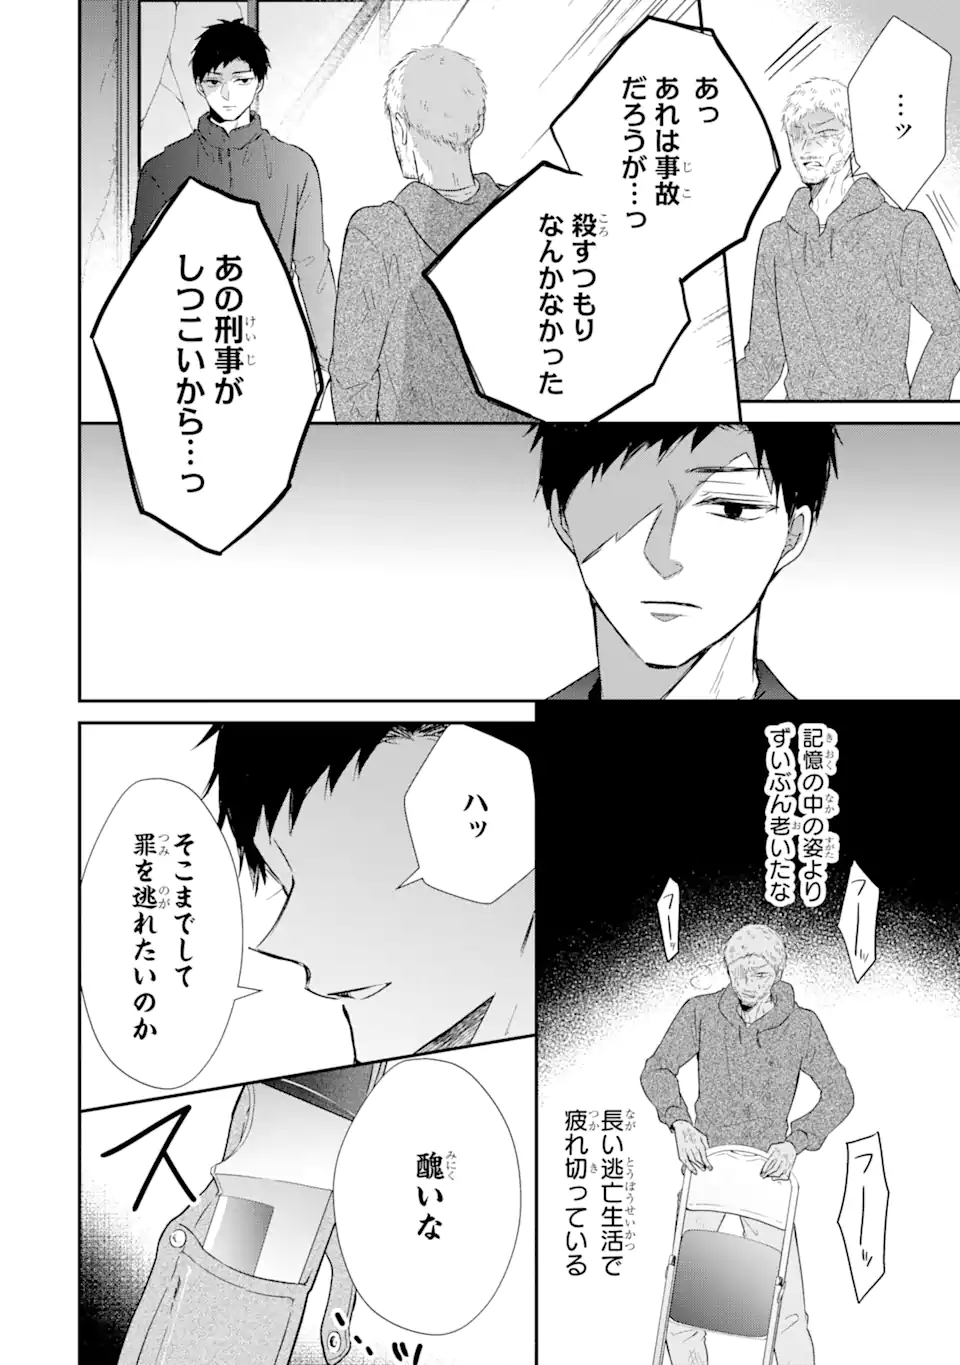 Keisatsu 3 Kyoudai wa Furyou Shoujo ni Amasugiru - Chapter 17.2 - Page 6